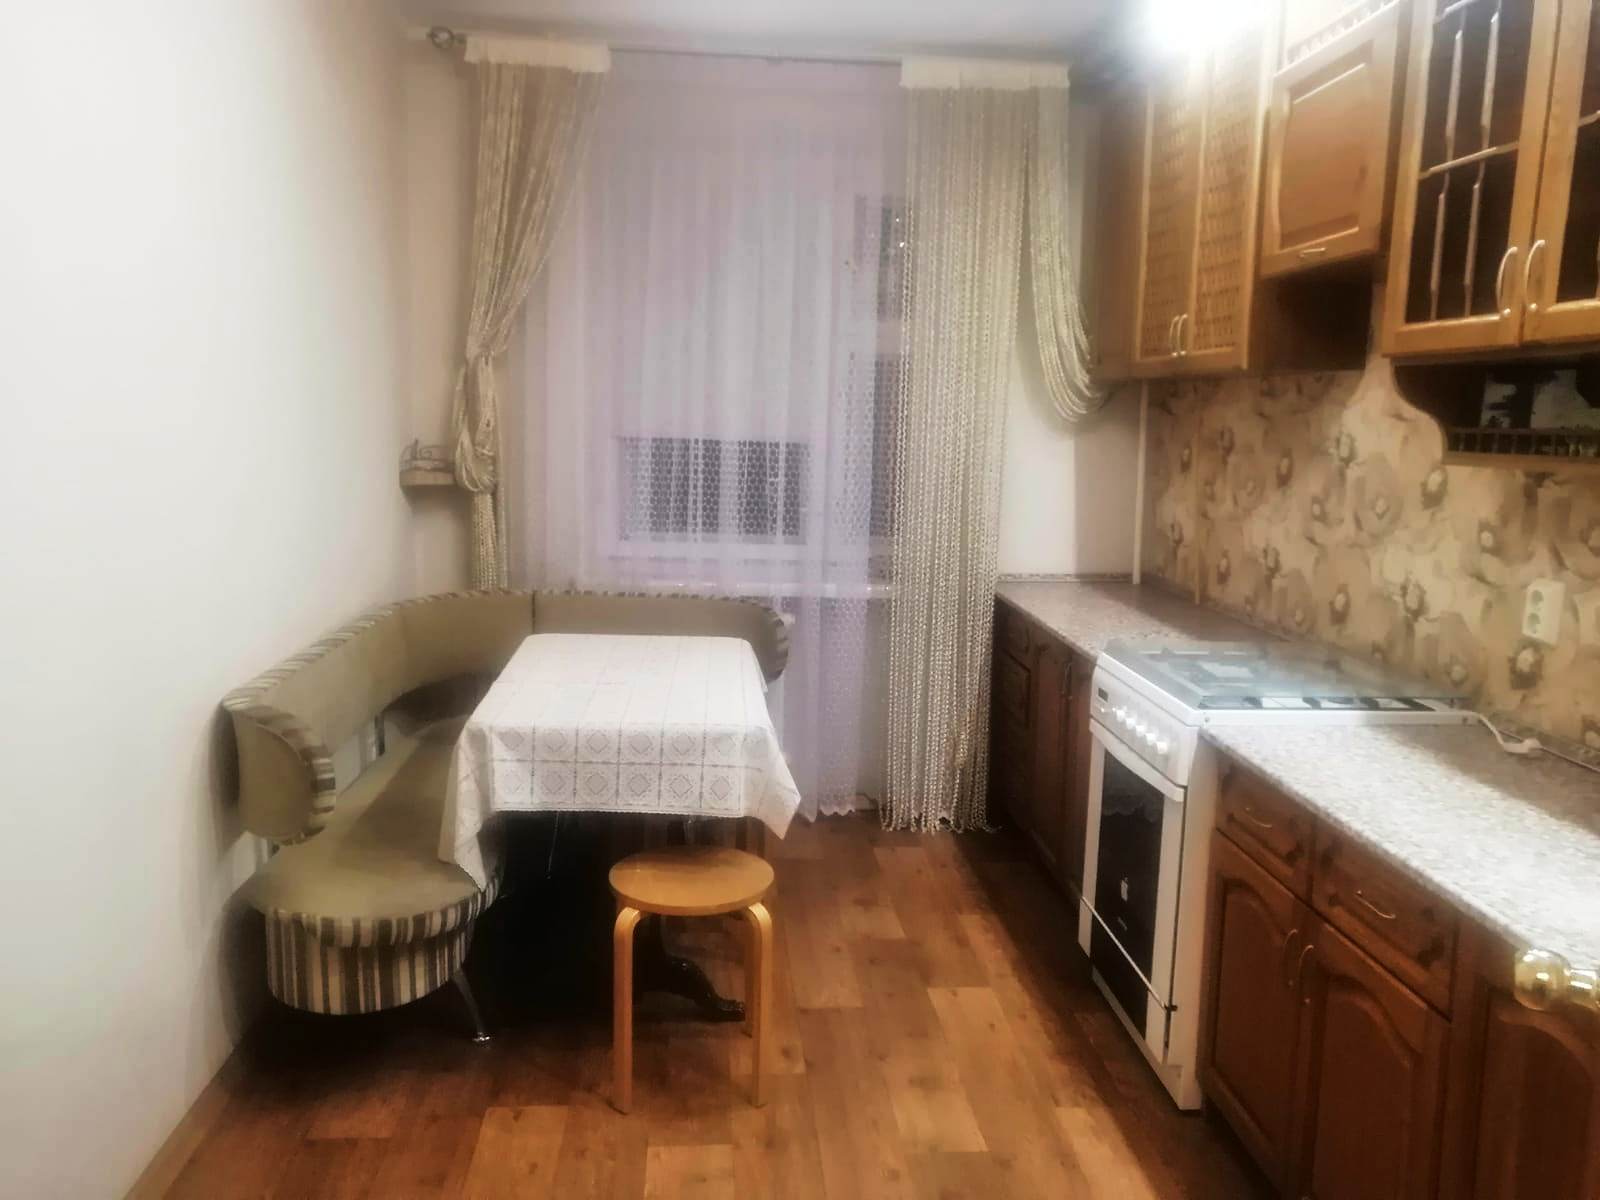 Продается отличная 3-х комнатная квартира улучшенной планировки на среднем этаже кирпичного дома в г. Зеленодольск.... - 5